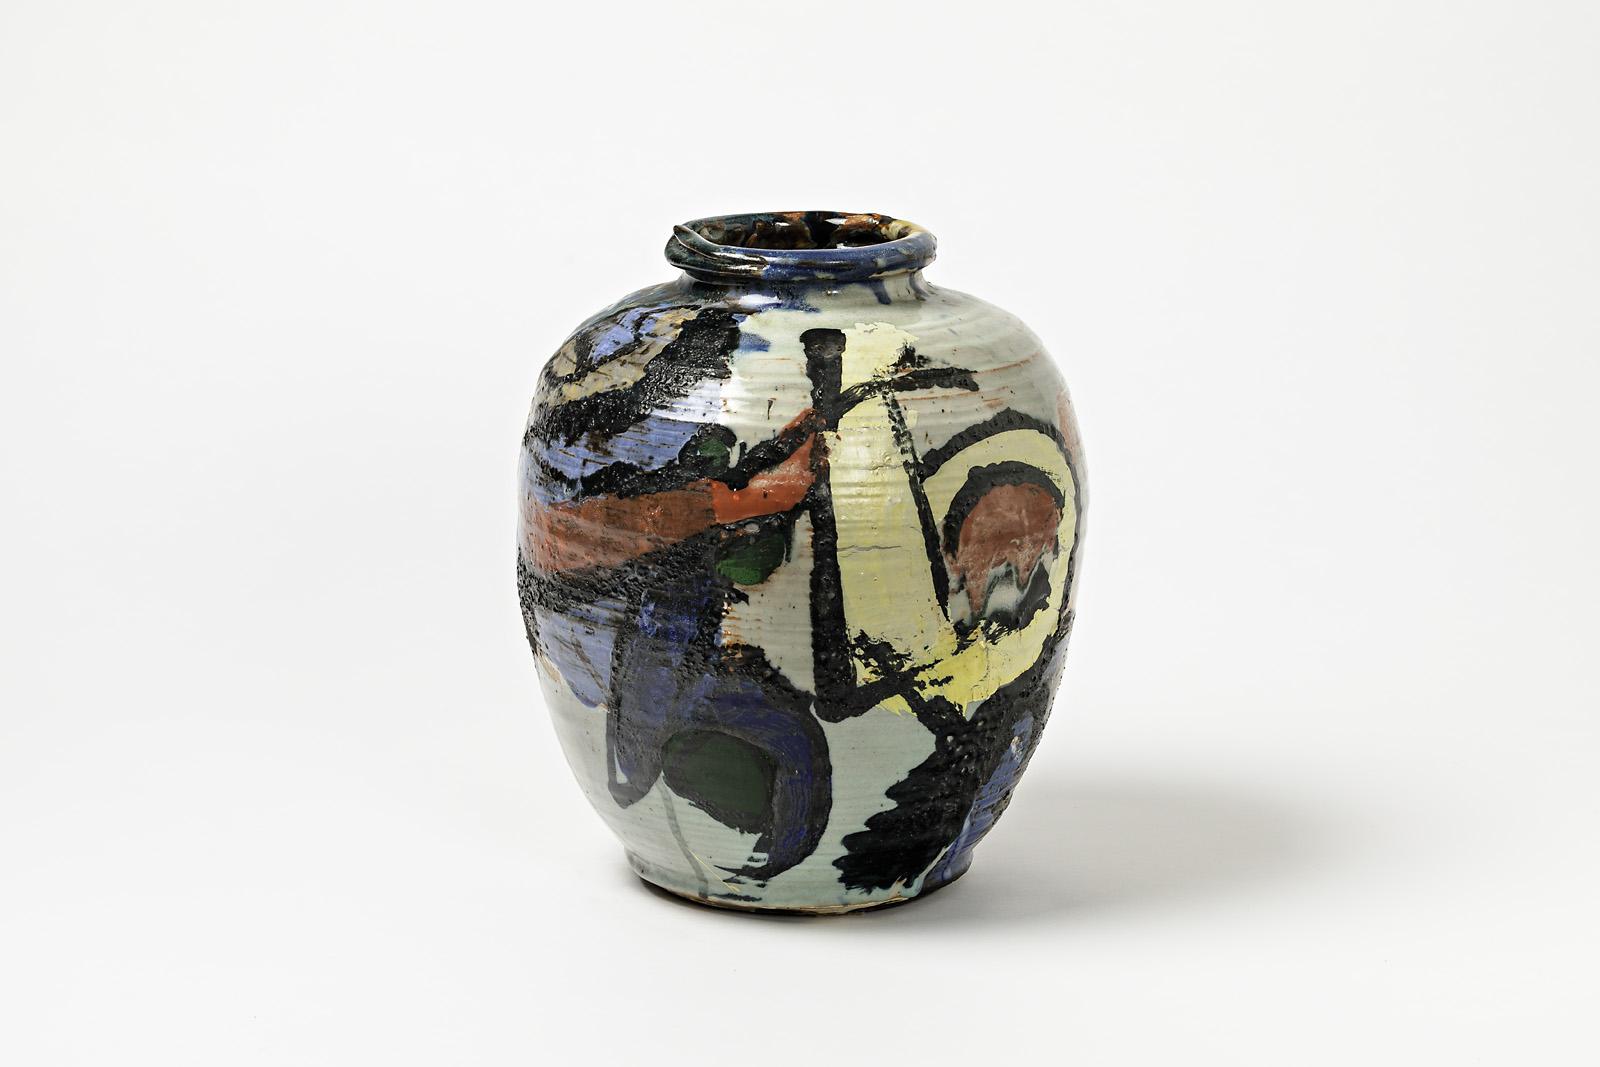 Keramikvase mit Glasurdekor von Michel Lanos (1926-2005).
Perfekte originelle Dekorationen.
Künstlermonogramm unter dem Sockel,
um 1990.
Einzigartiges Stück.